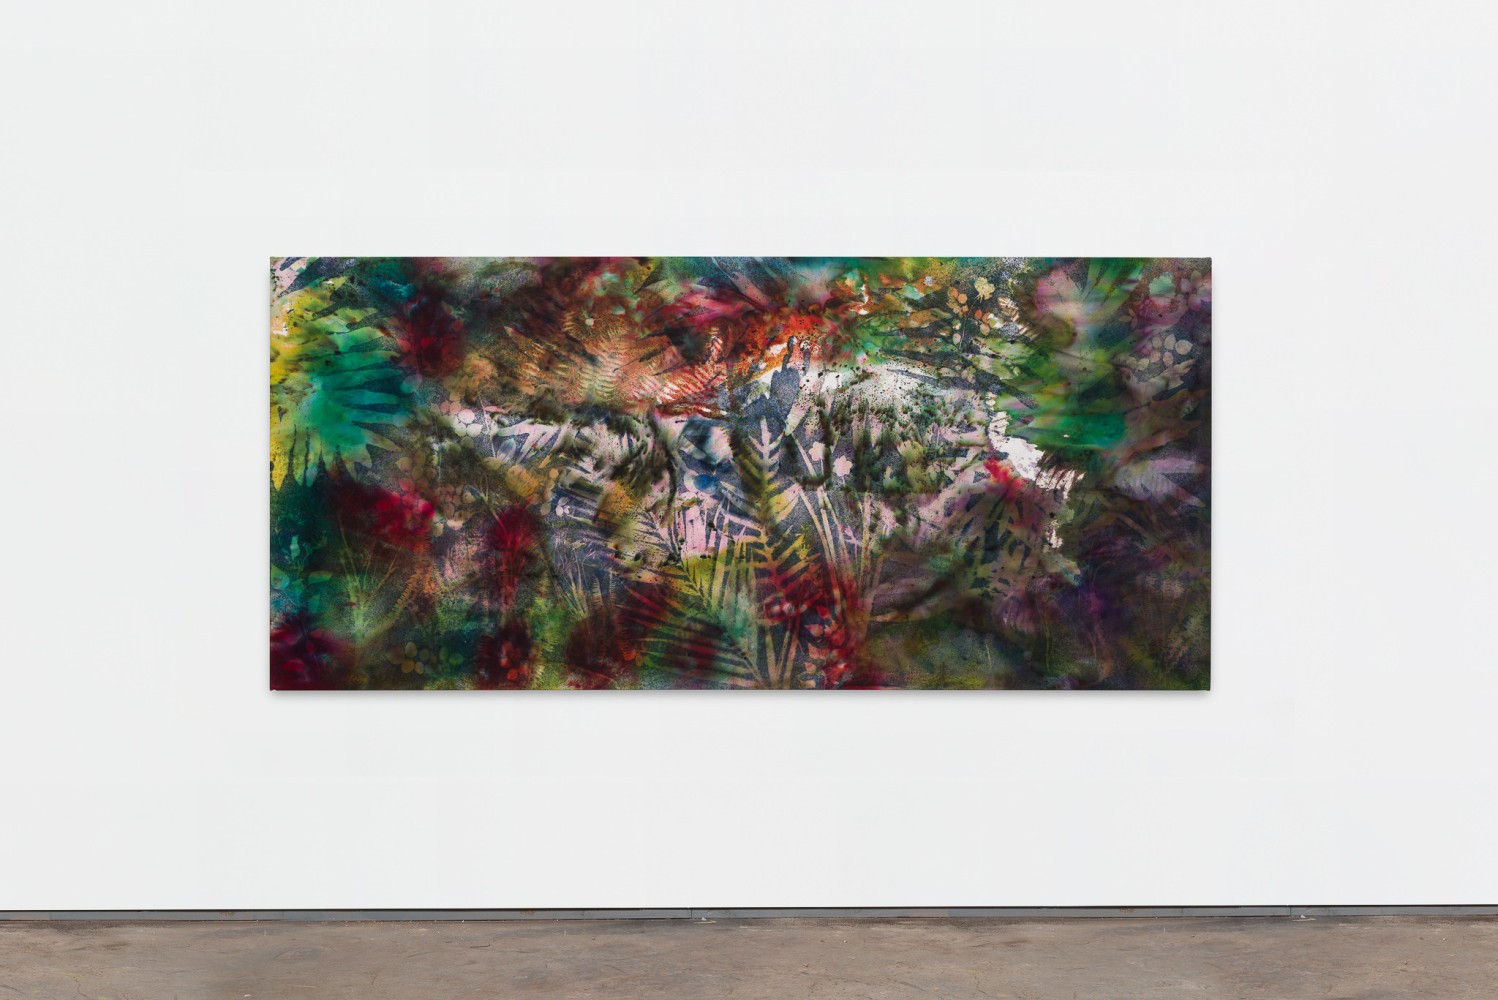 Sam Falls

Paradise

2020

Pigment on canvas

51 x 111 inches (129.5 x 281.9 cm)

SFA 366

&amp;nbsp;

INQUIRE&amp;nbsp;